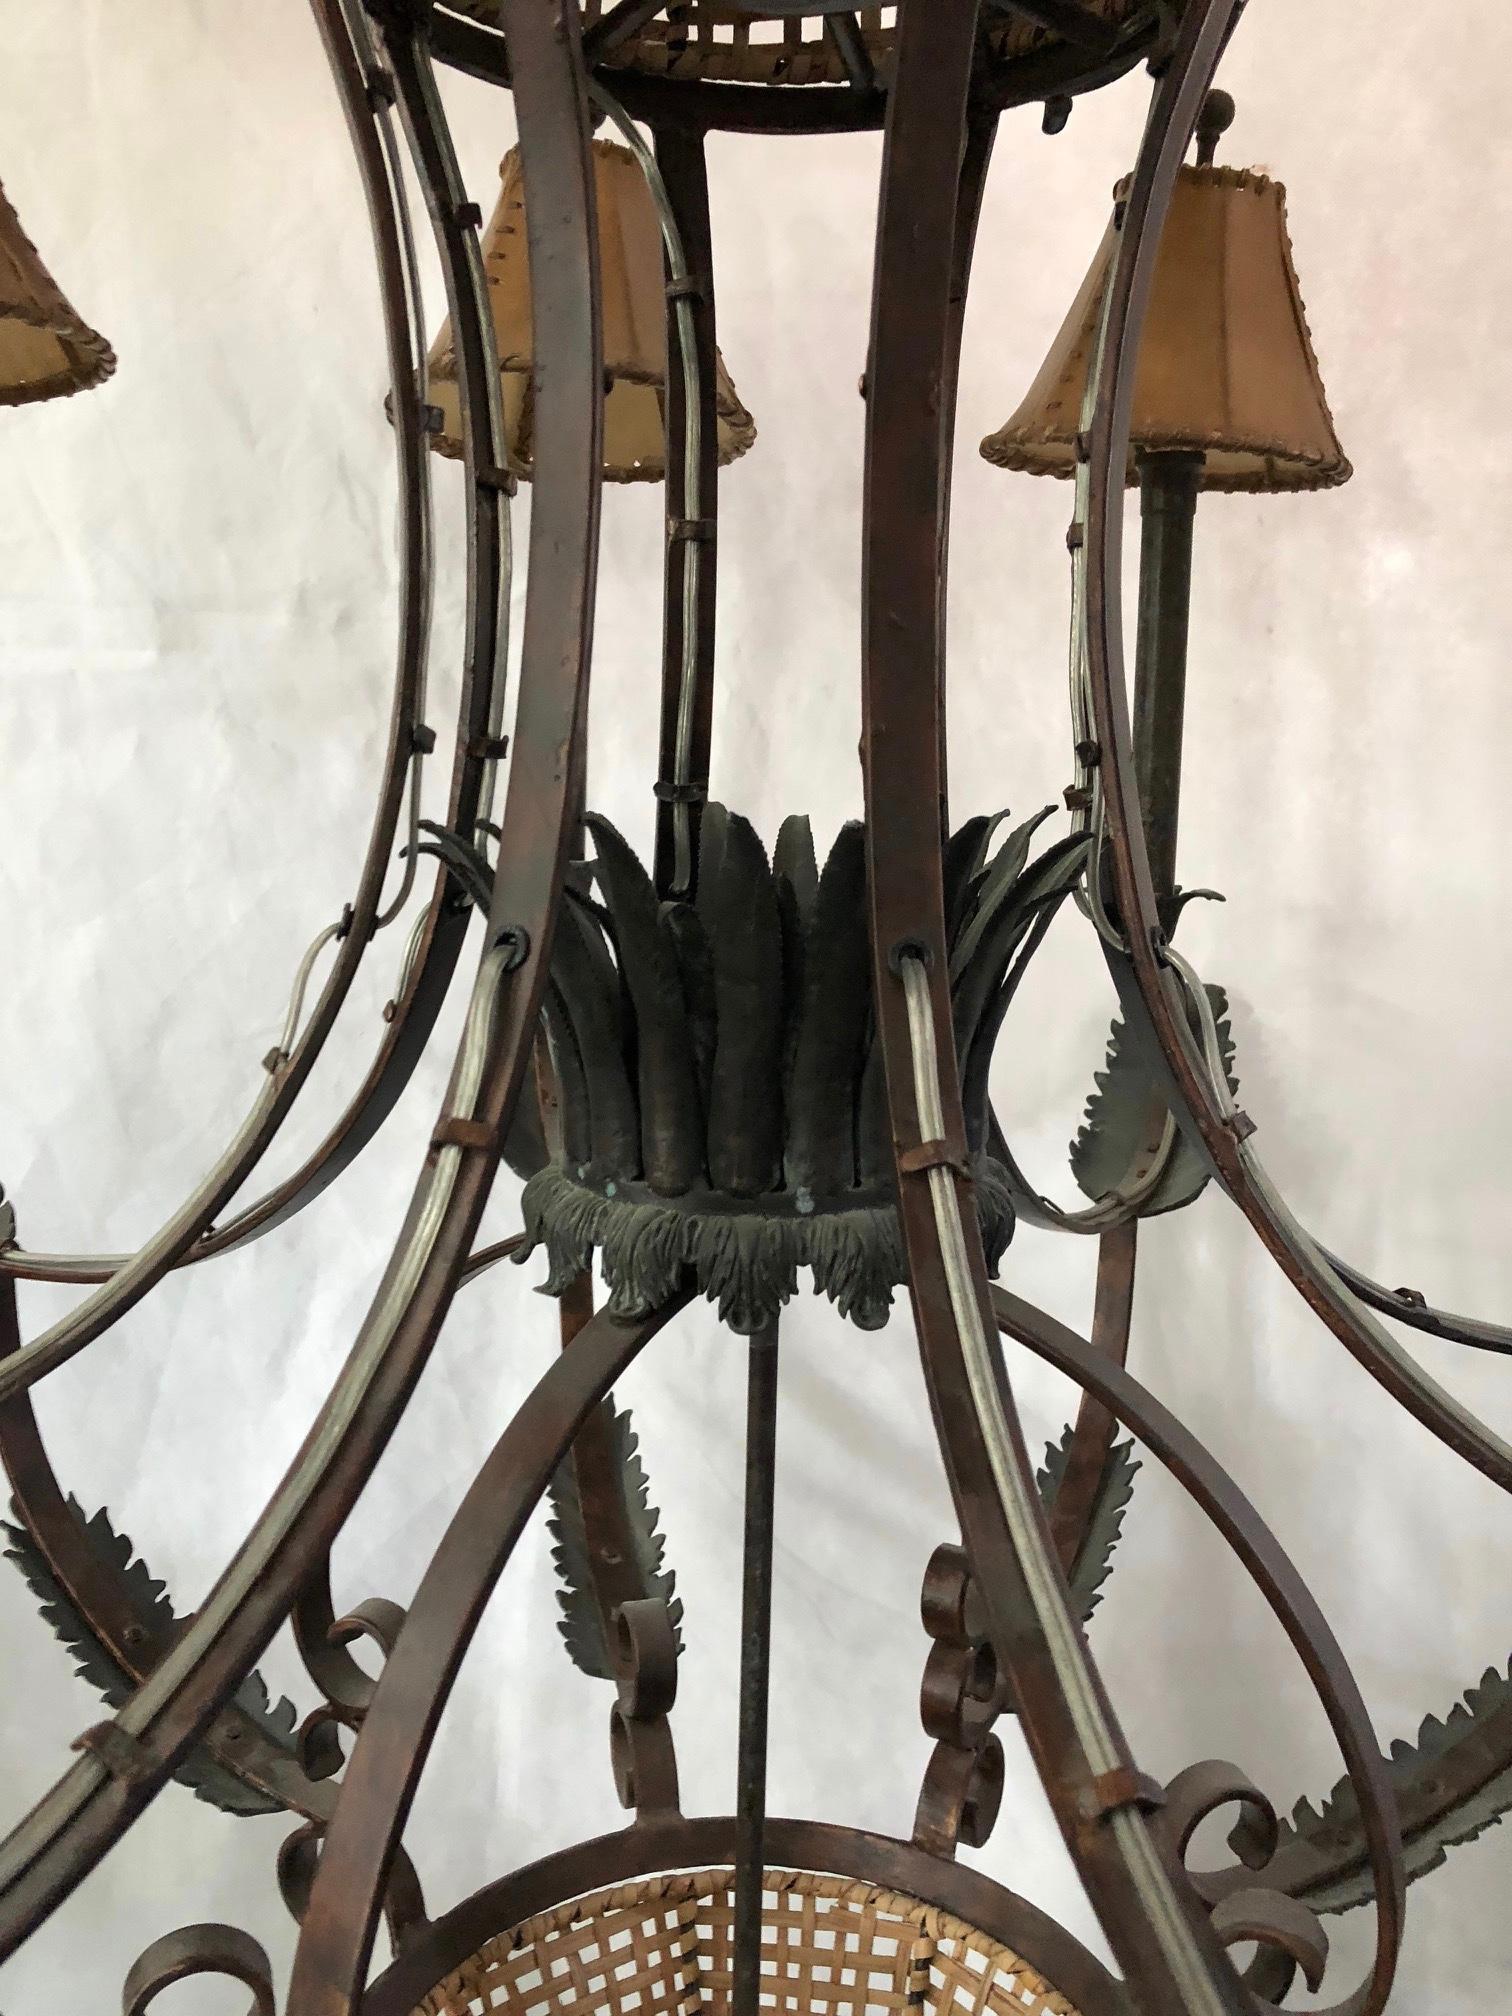 monkey chandelier for sale